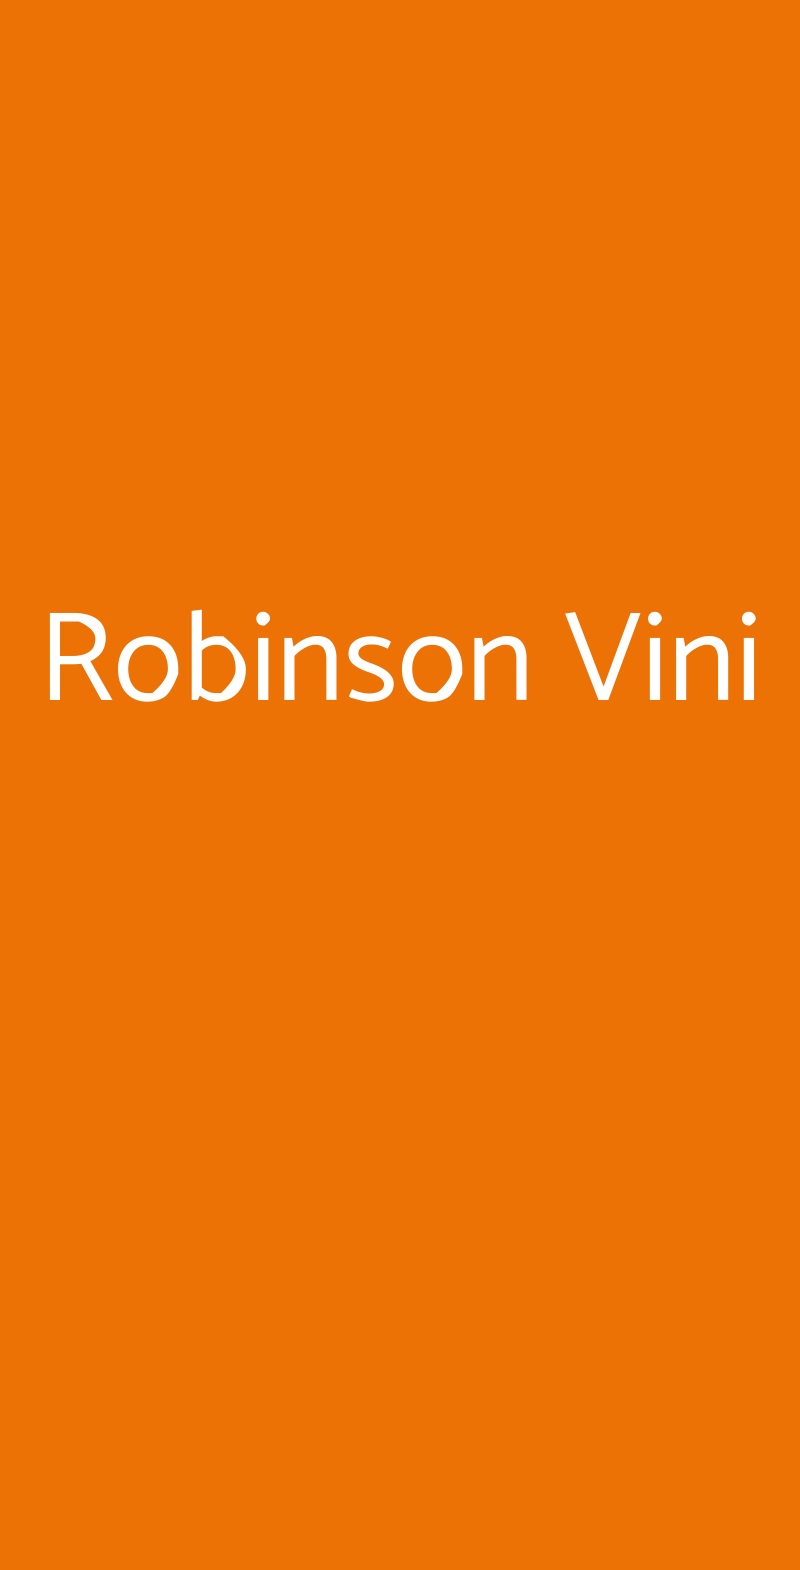 Robinson Vini Palermo menù 1 pagina